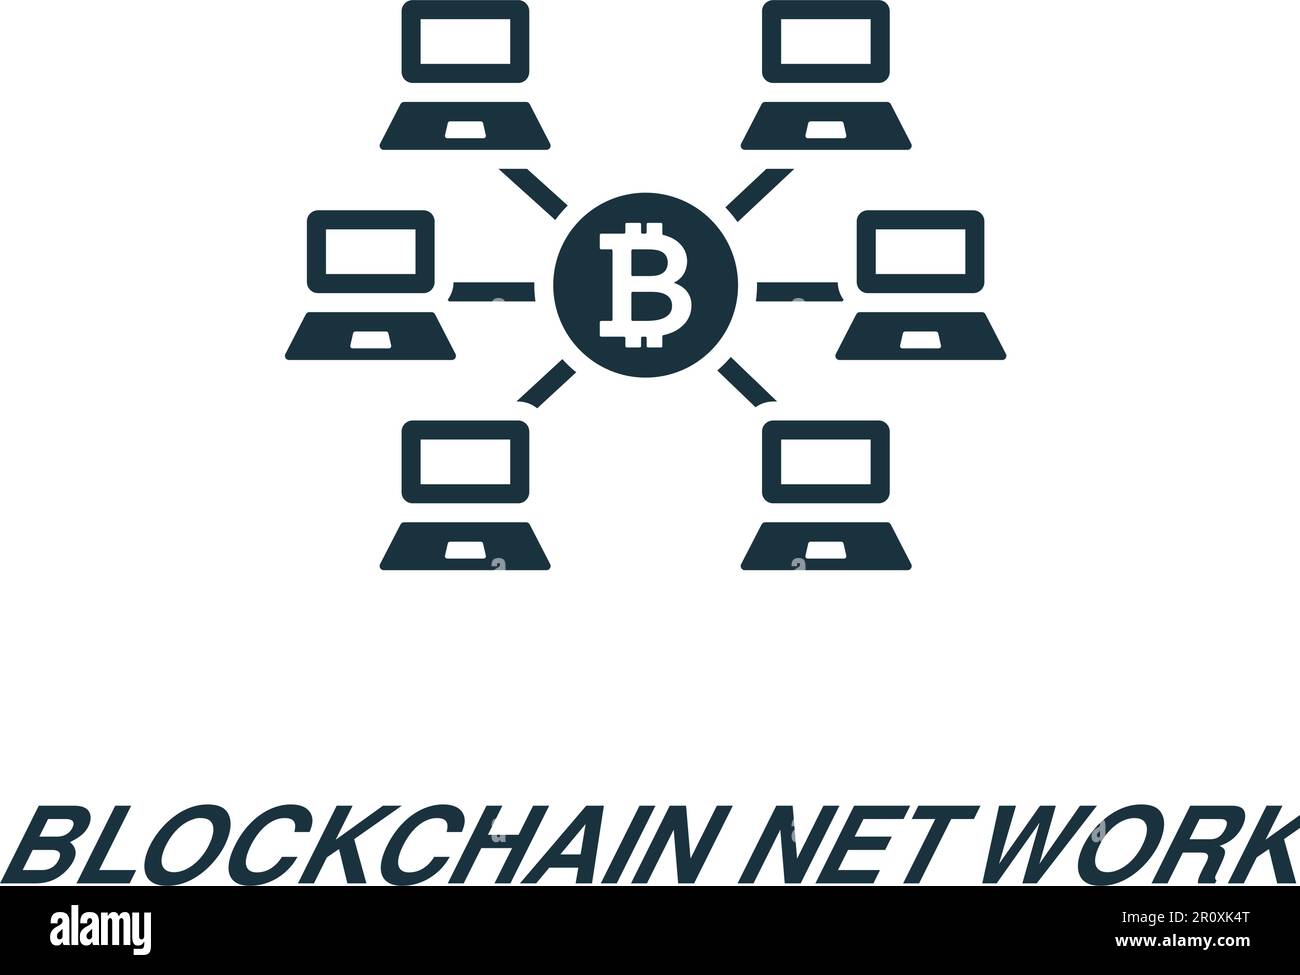 Symbol für Blockchain-Netzwerk. Einfarbiges einfaches Schild aus der Blockchain-Kollektion. Blockchain-Netzwerksymbol für Logo, Vorlagen, Webdesign und Infografiken. Stock Vektor